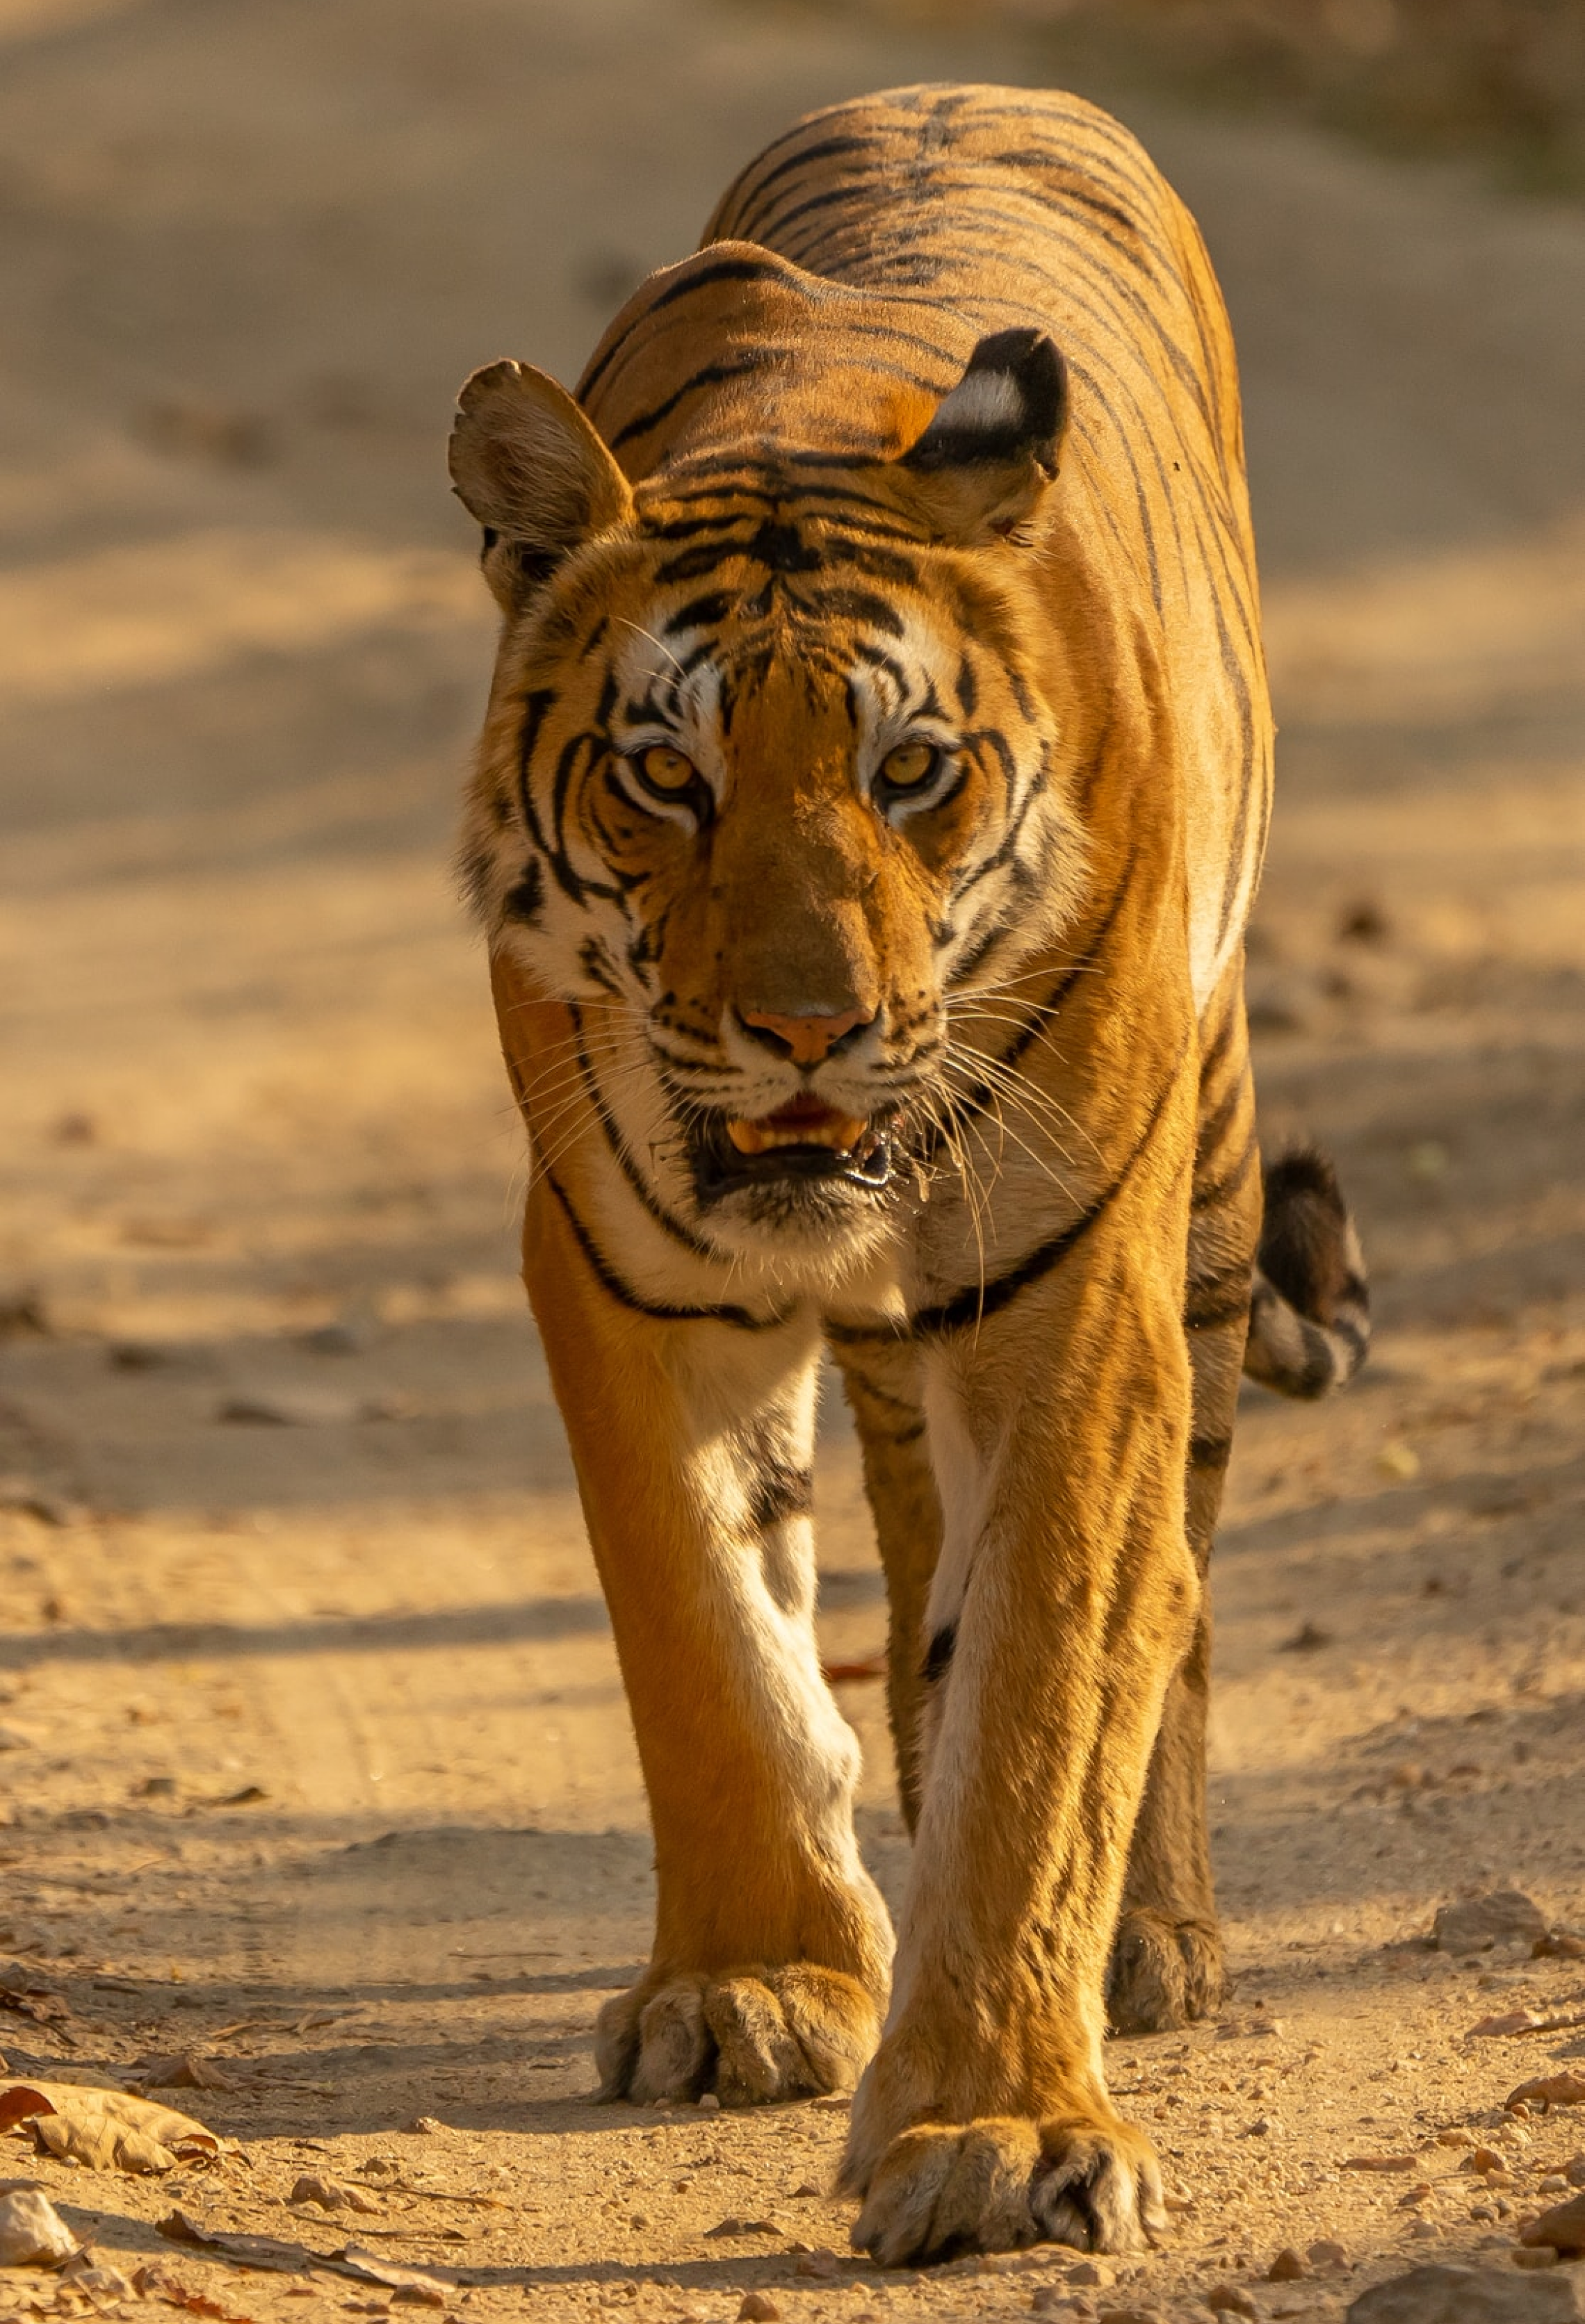 Ranthamobre's Tiger walk